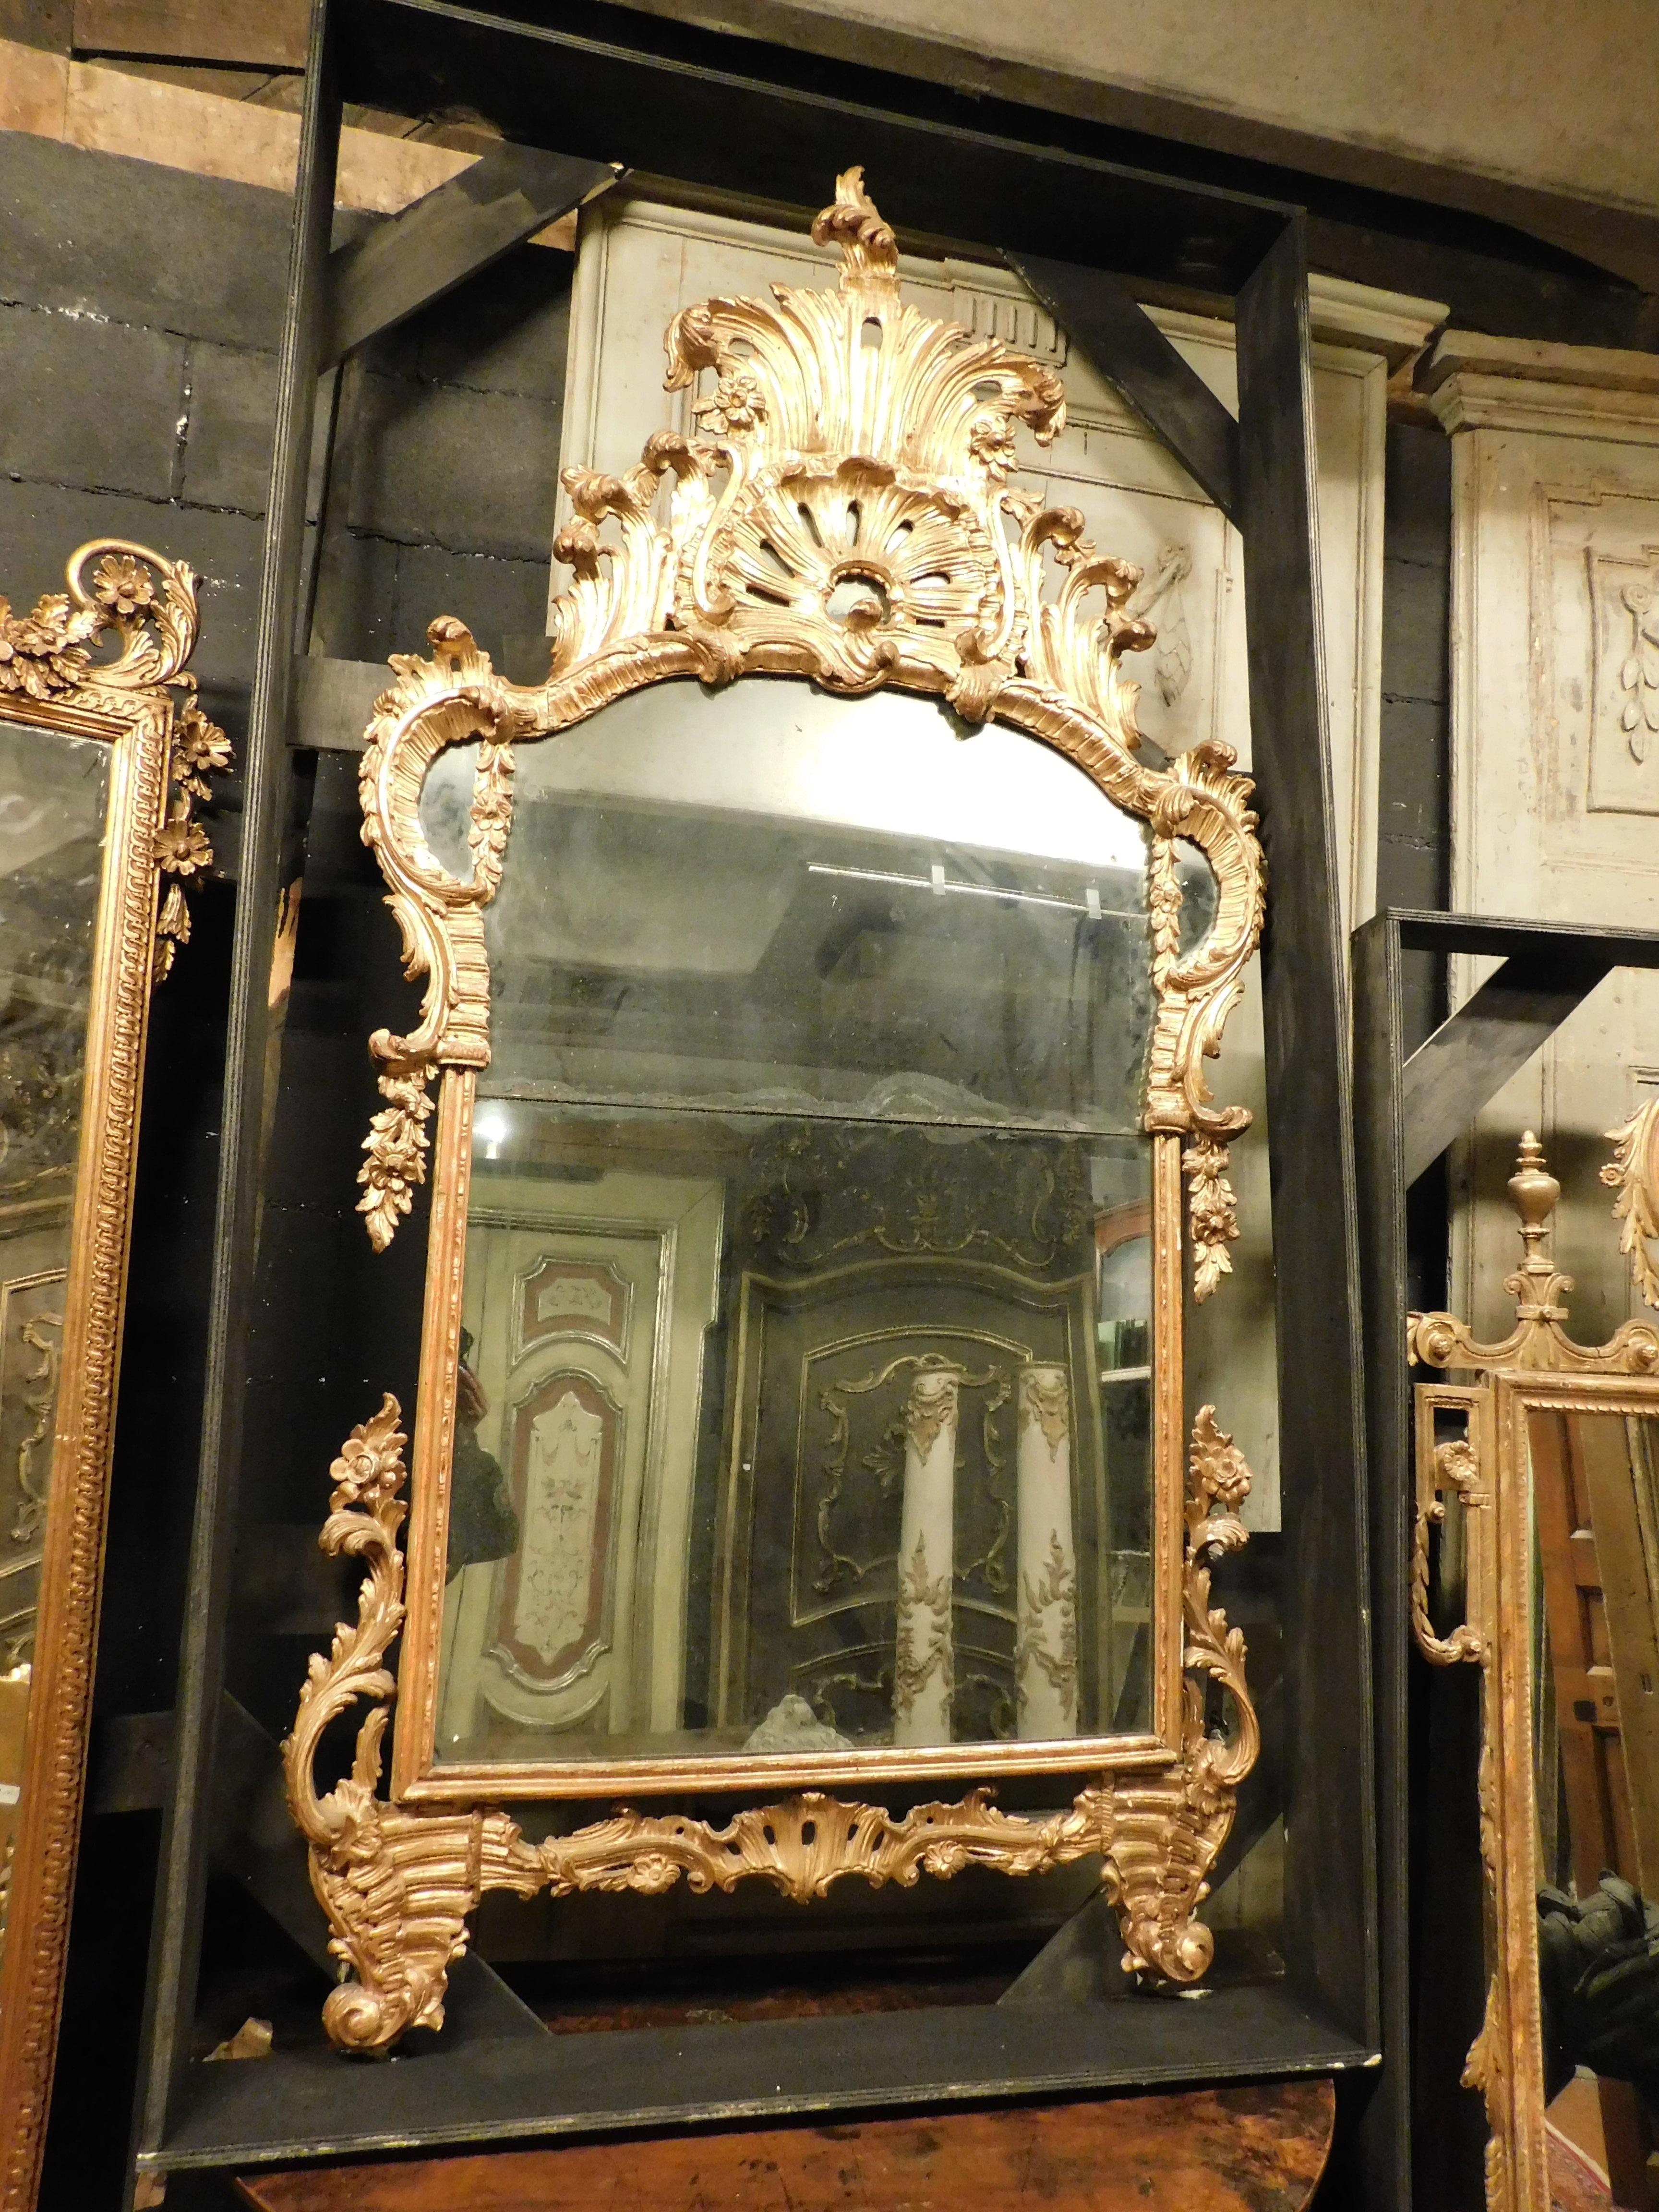 Ancien, antique et important miroir sur pied, miroir avec cadre en bois doré et cymatium richement sculpté avec volutes baroques, miroir original, construit en Italie, au 18ème siècle, dans le Piémont, grand artefact historique et original, il